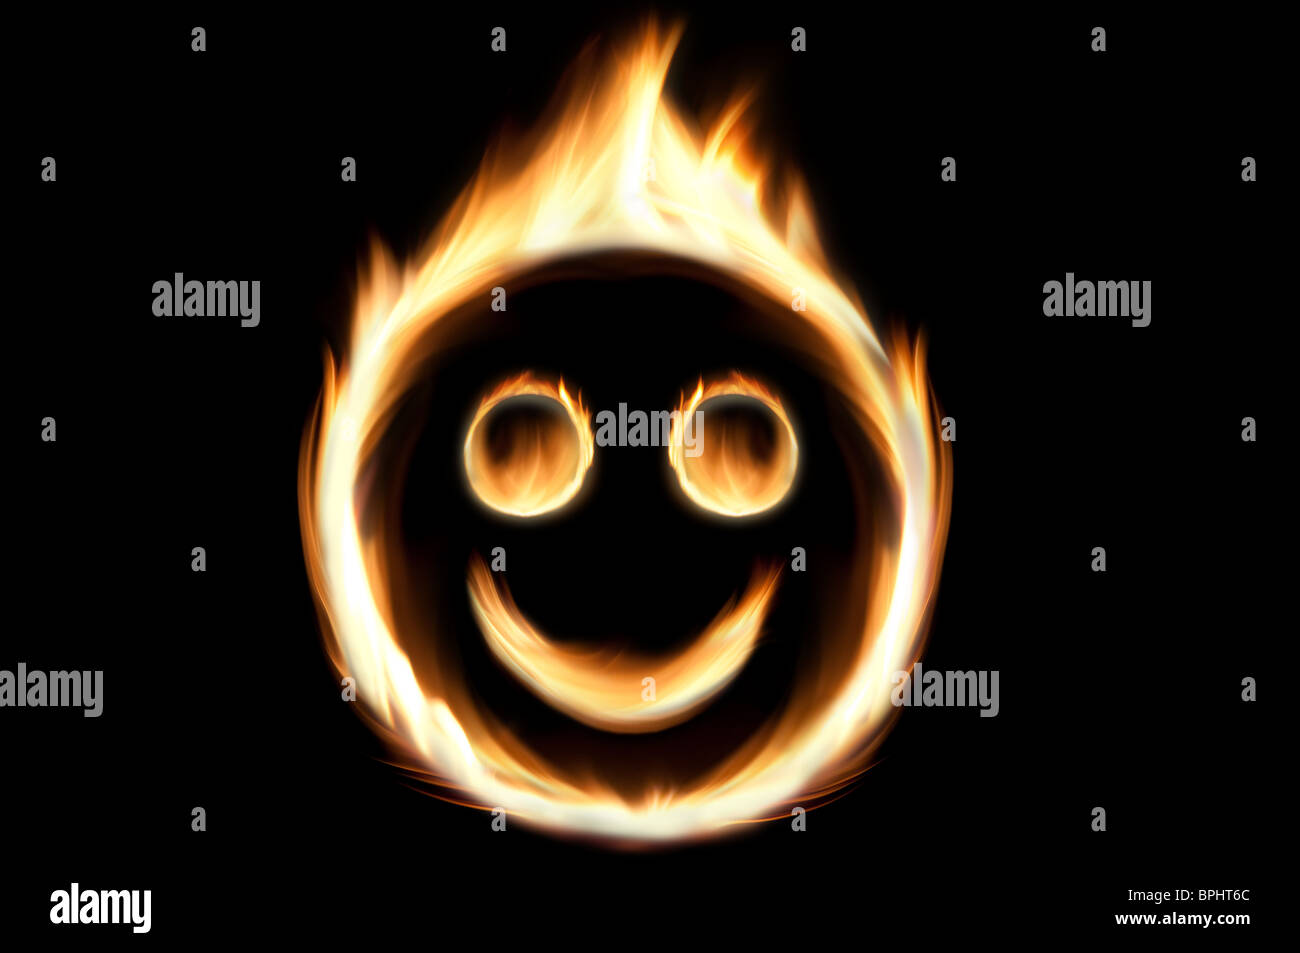 Smiley - incendie fire flames dans la forme d'un visage souriant. Banque D'Images